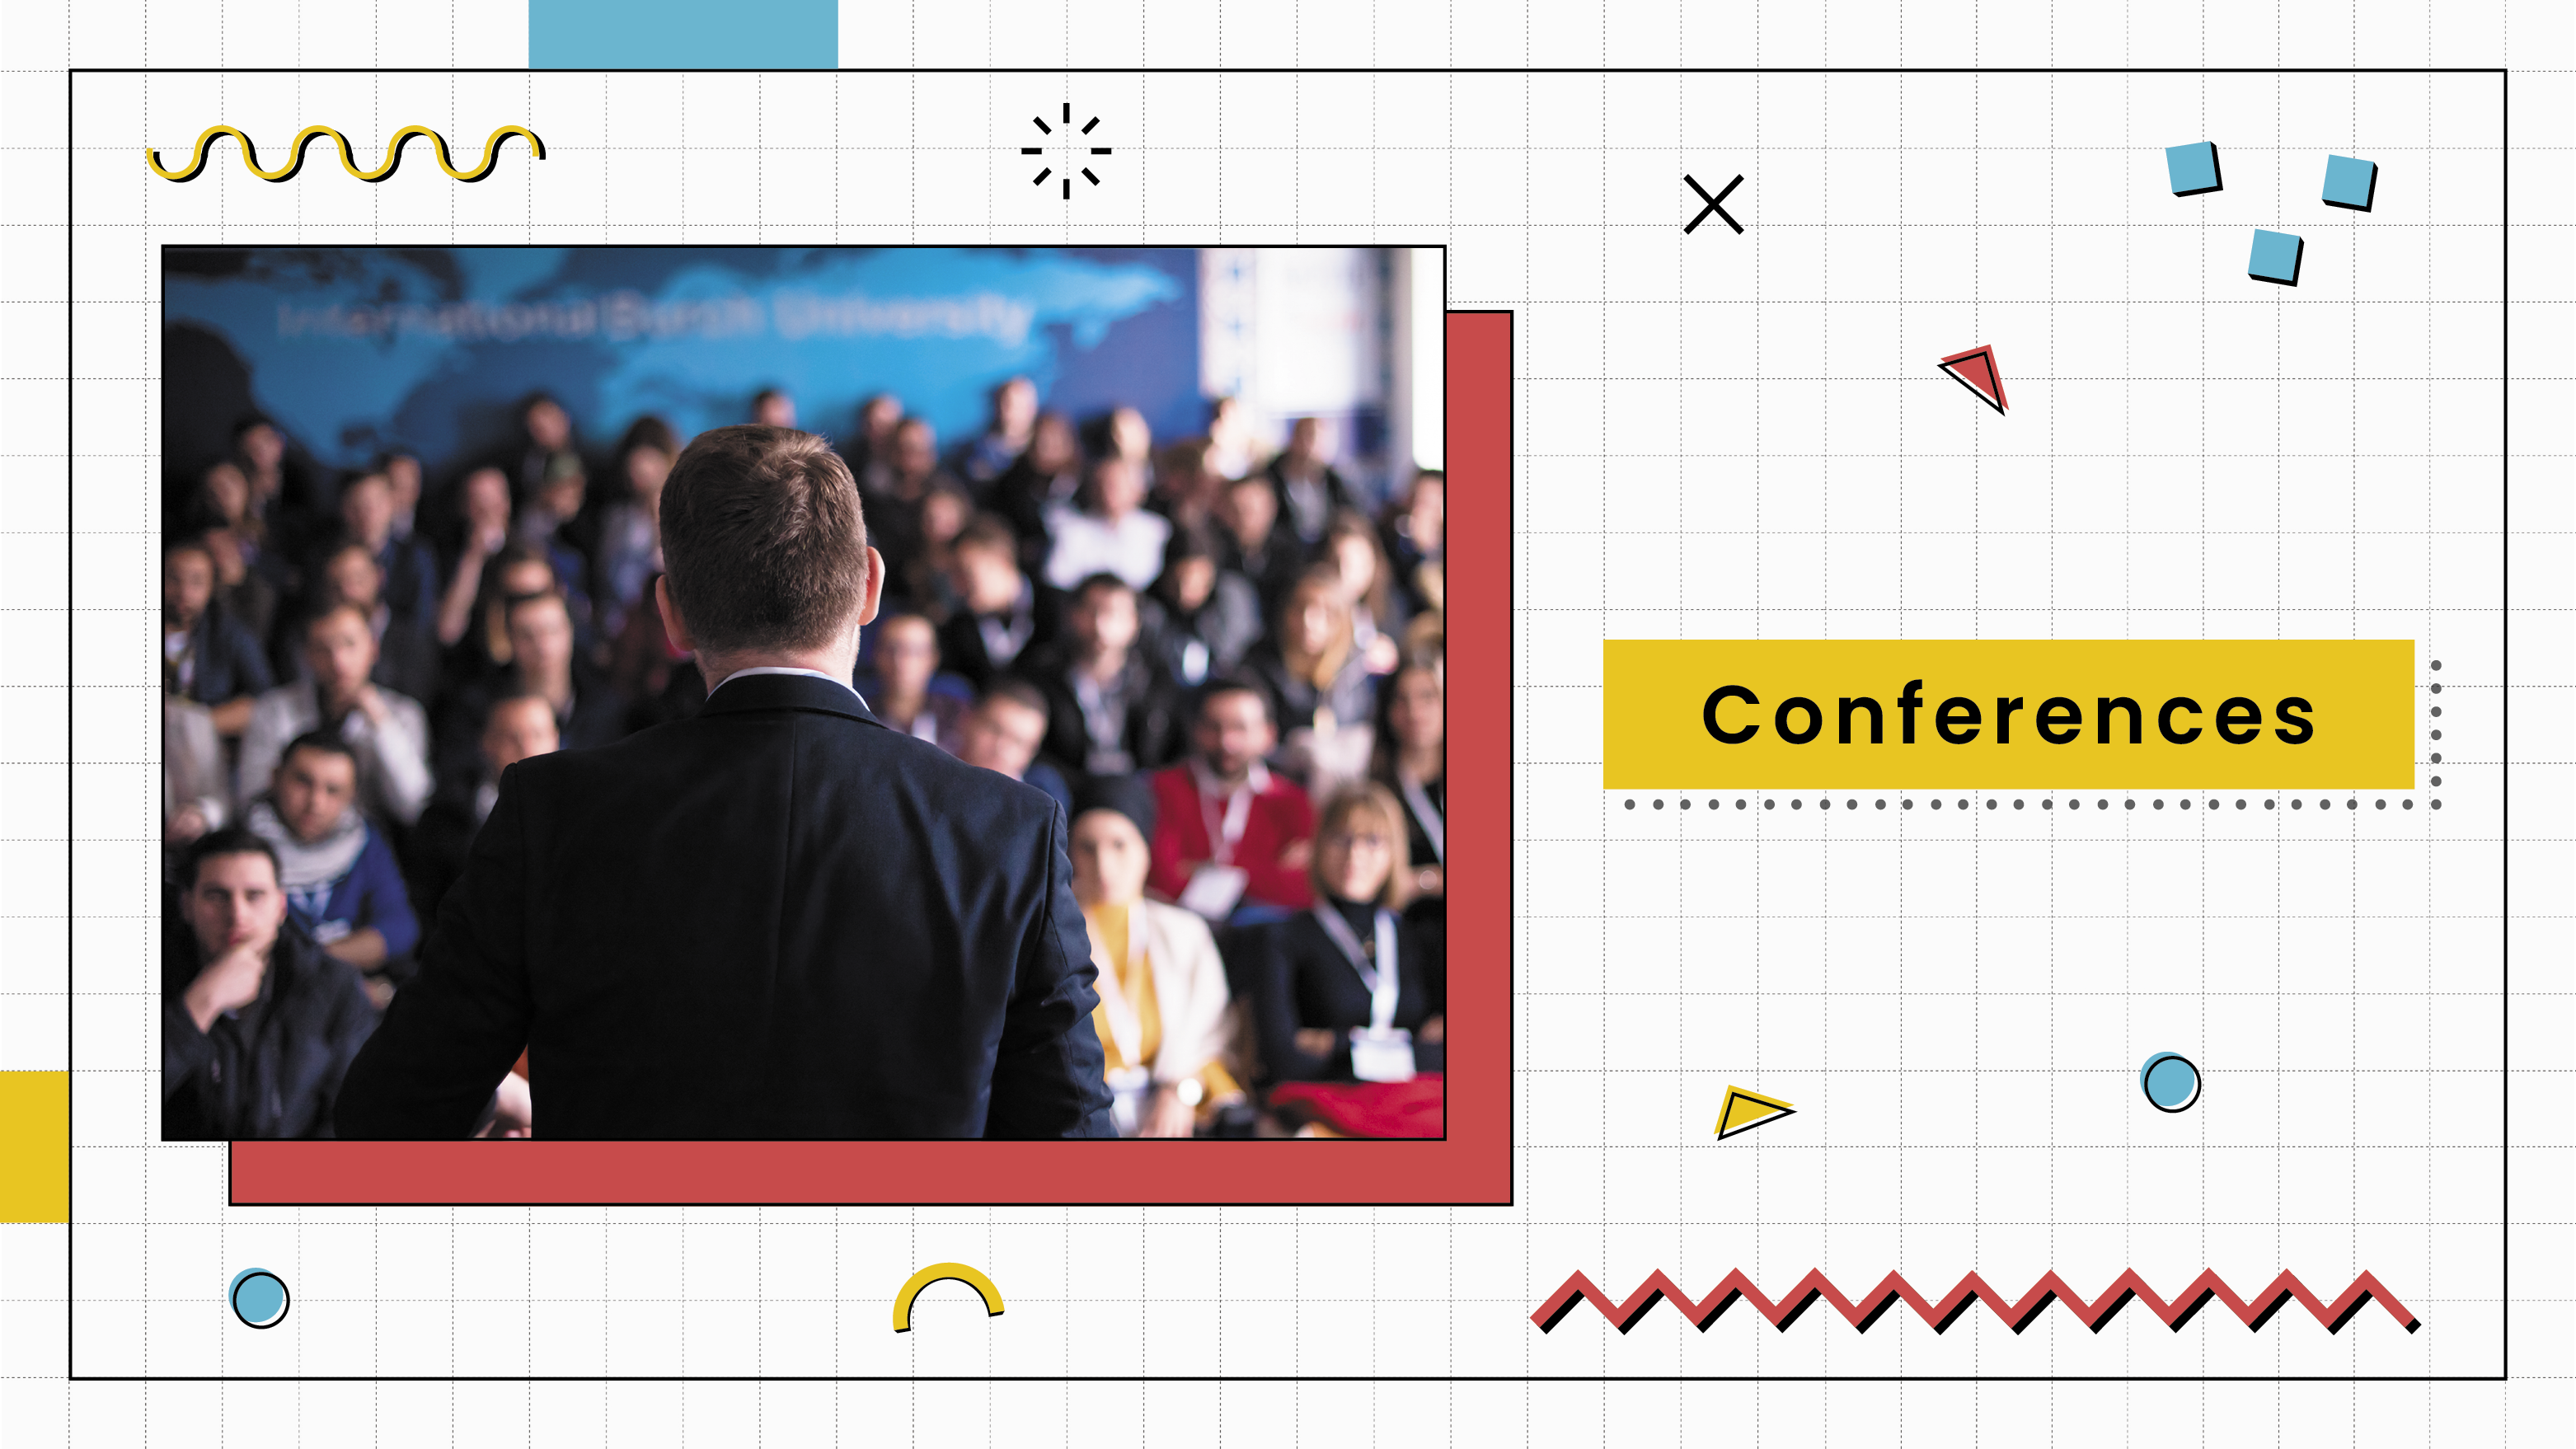 [D]  Conferences